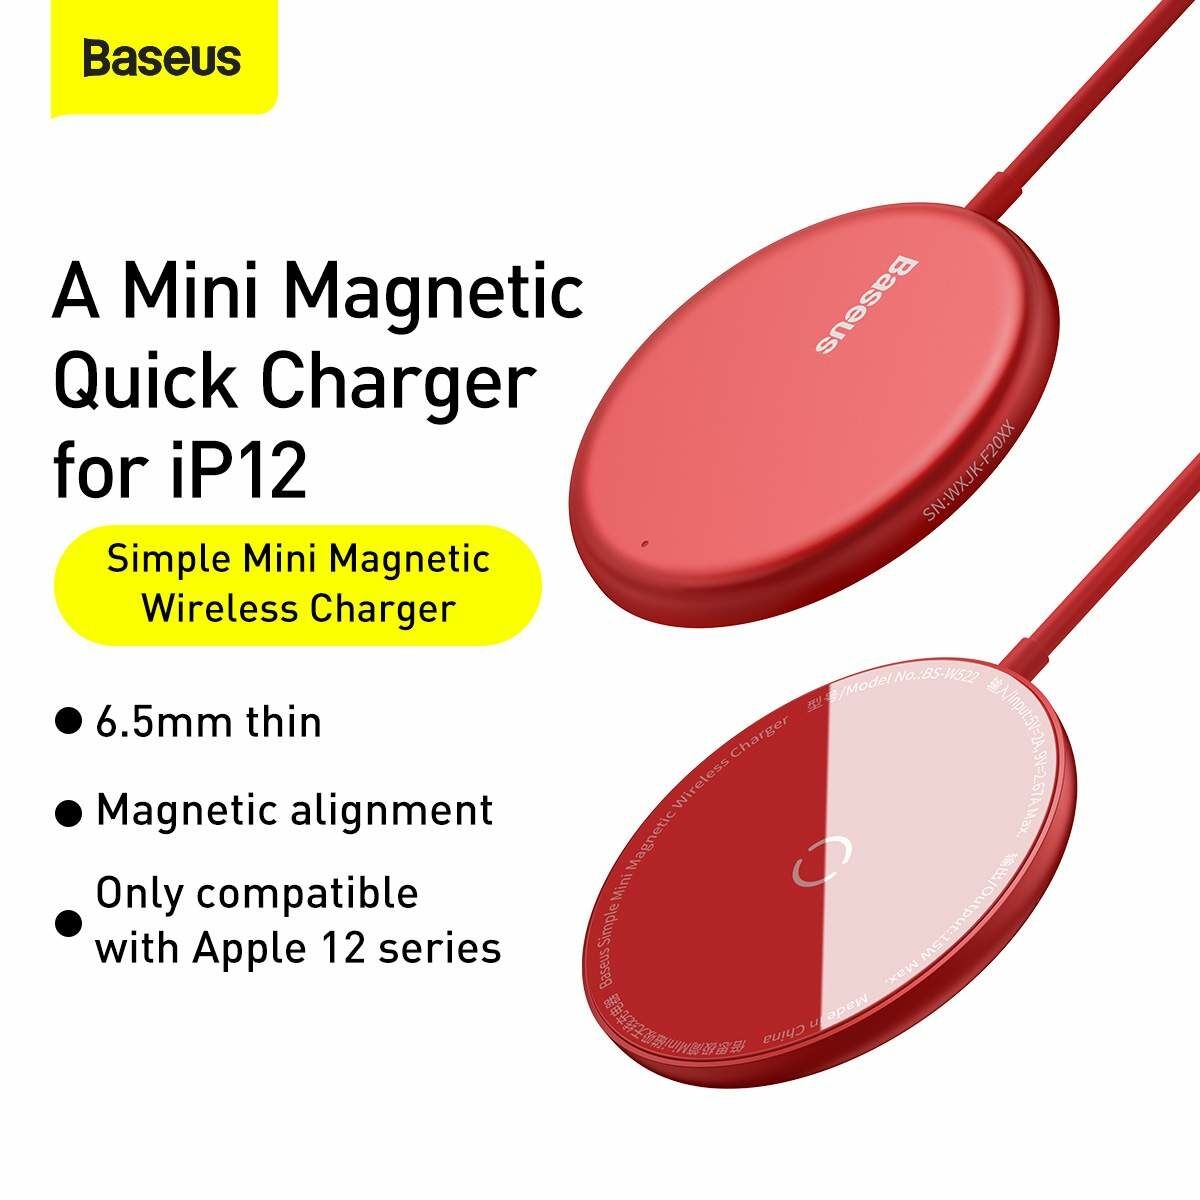 Kép 3/11 - Baseus vezeték nélküli töltő, Simple Magnetic Mini, iPhone 12 modellhez Type-C kábellel 1.5m, 15W, piros (WXJK-H09)